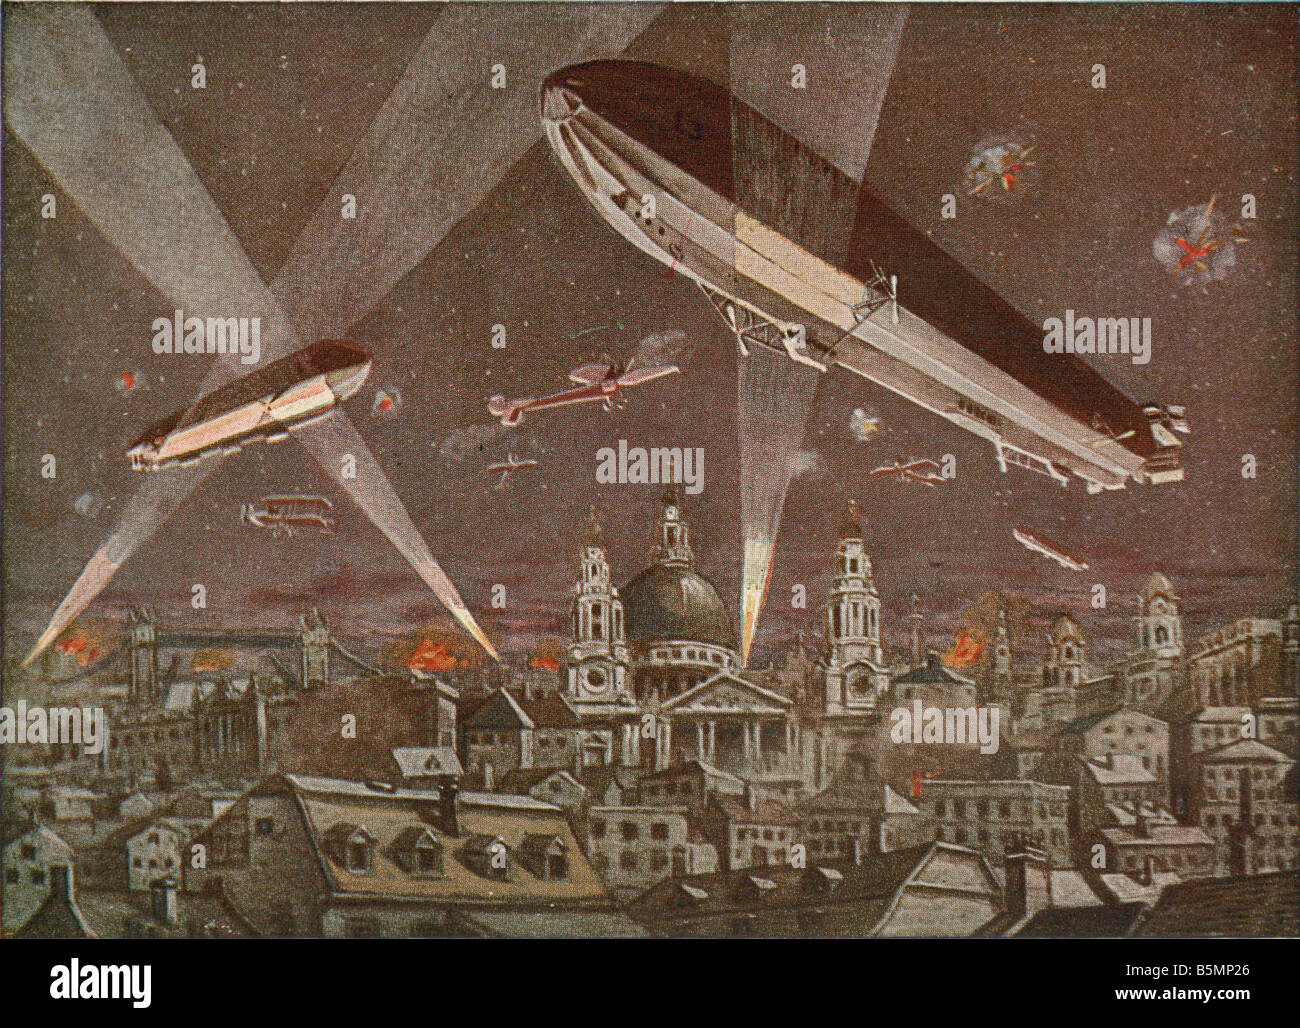 9 1914 0 0 A8 Zeppeline über London Bild Postkarte Erster Weltkrieg 1914-18 Luft kämpfen Zeppeline deutschen London Zeppeline oben L Stockfoto